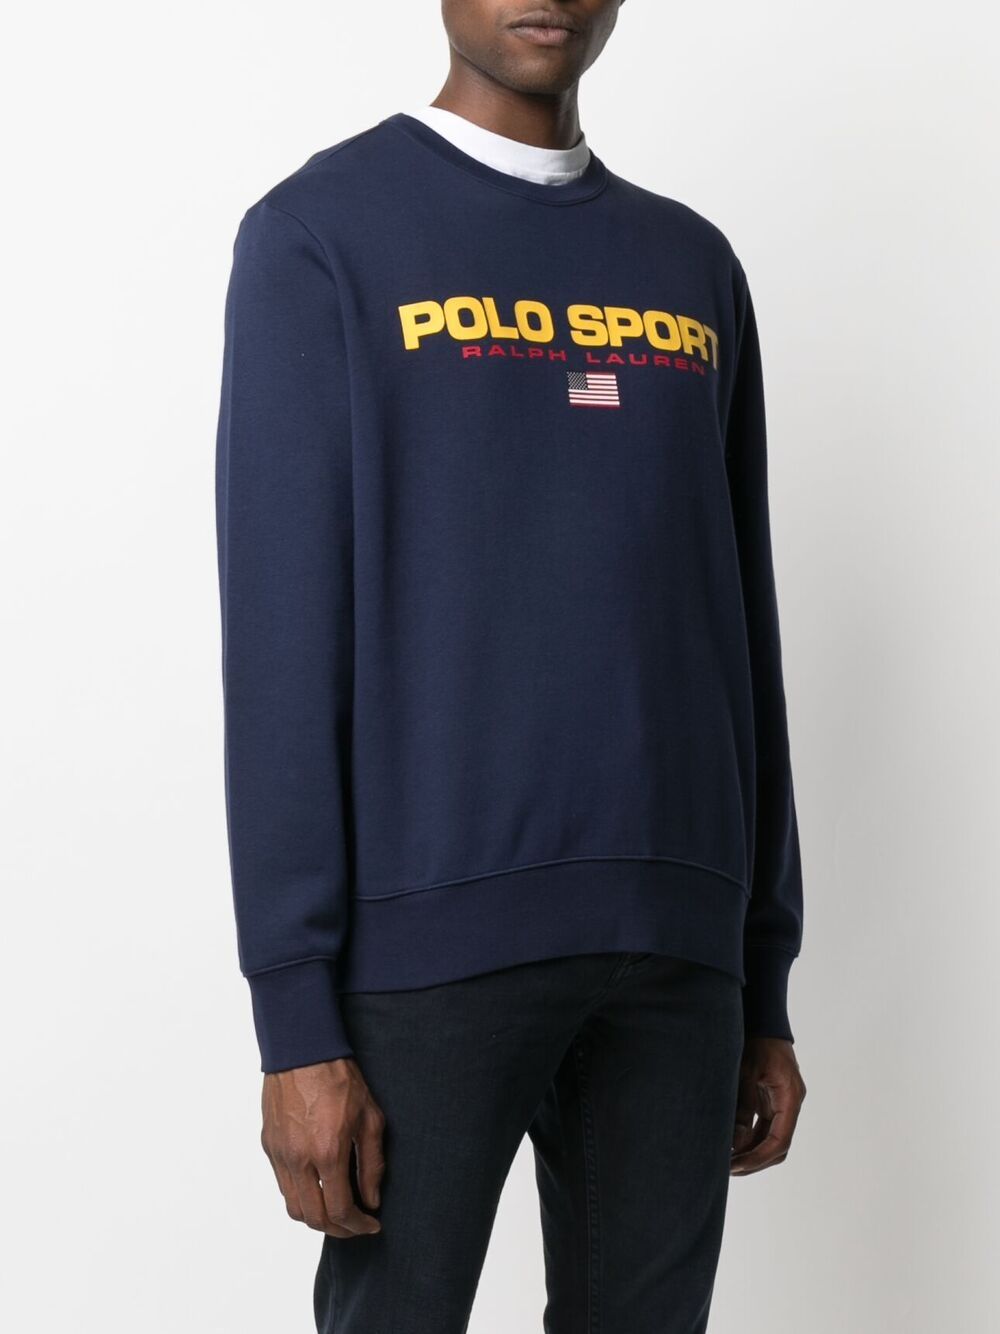 фото Polo ralph lauren пуловер с логотипом